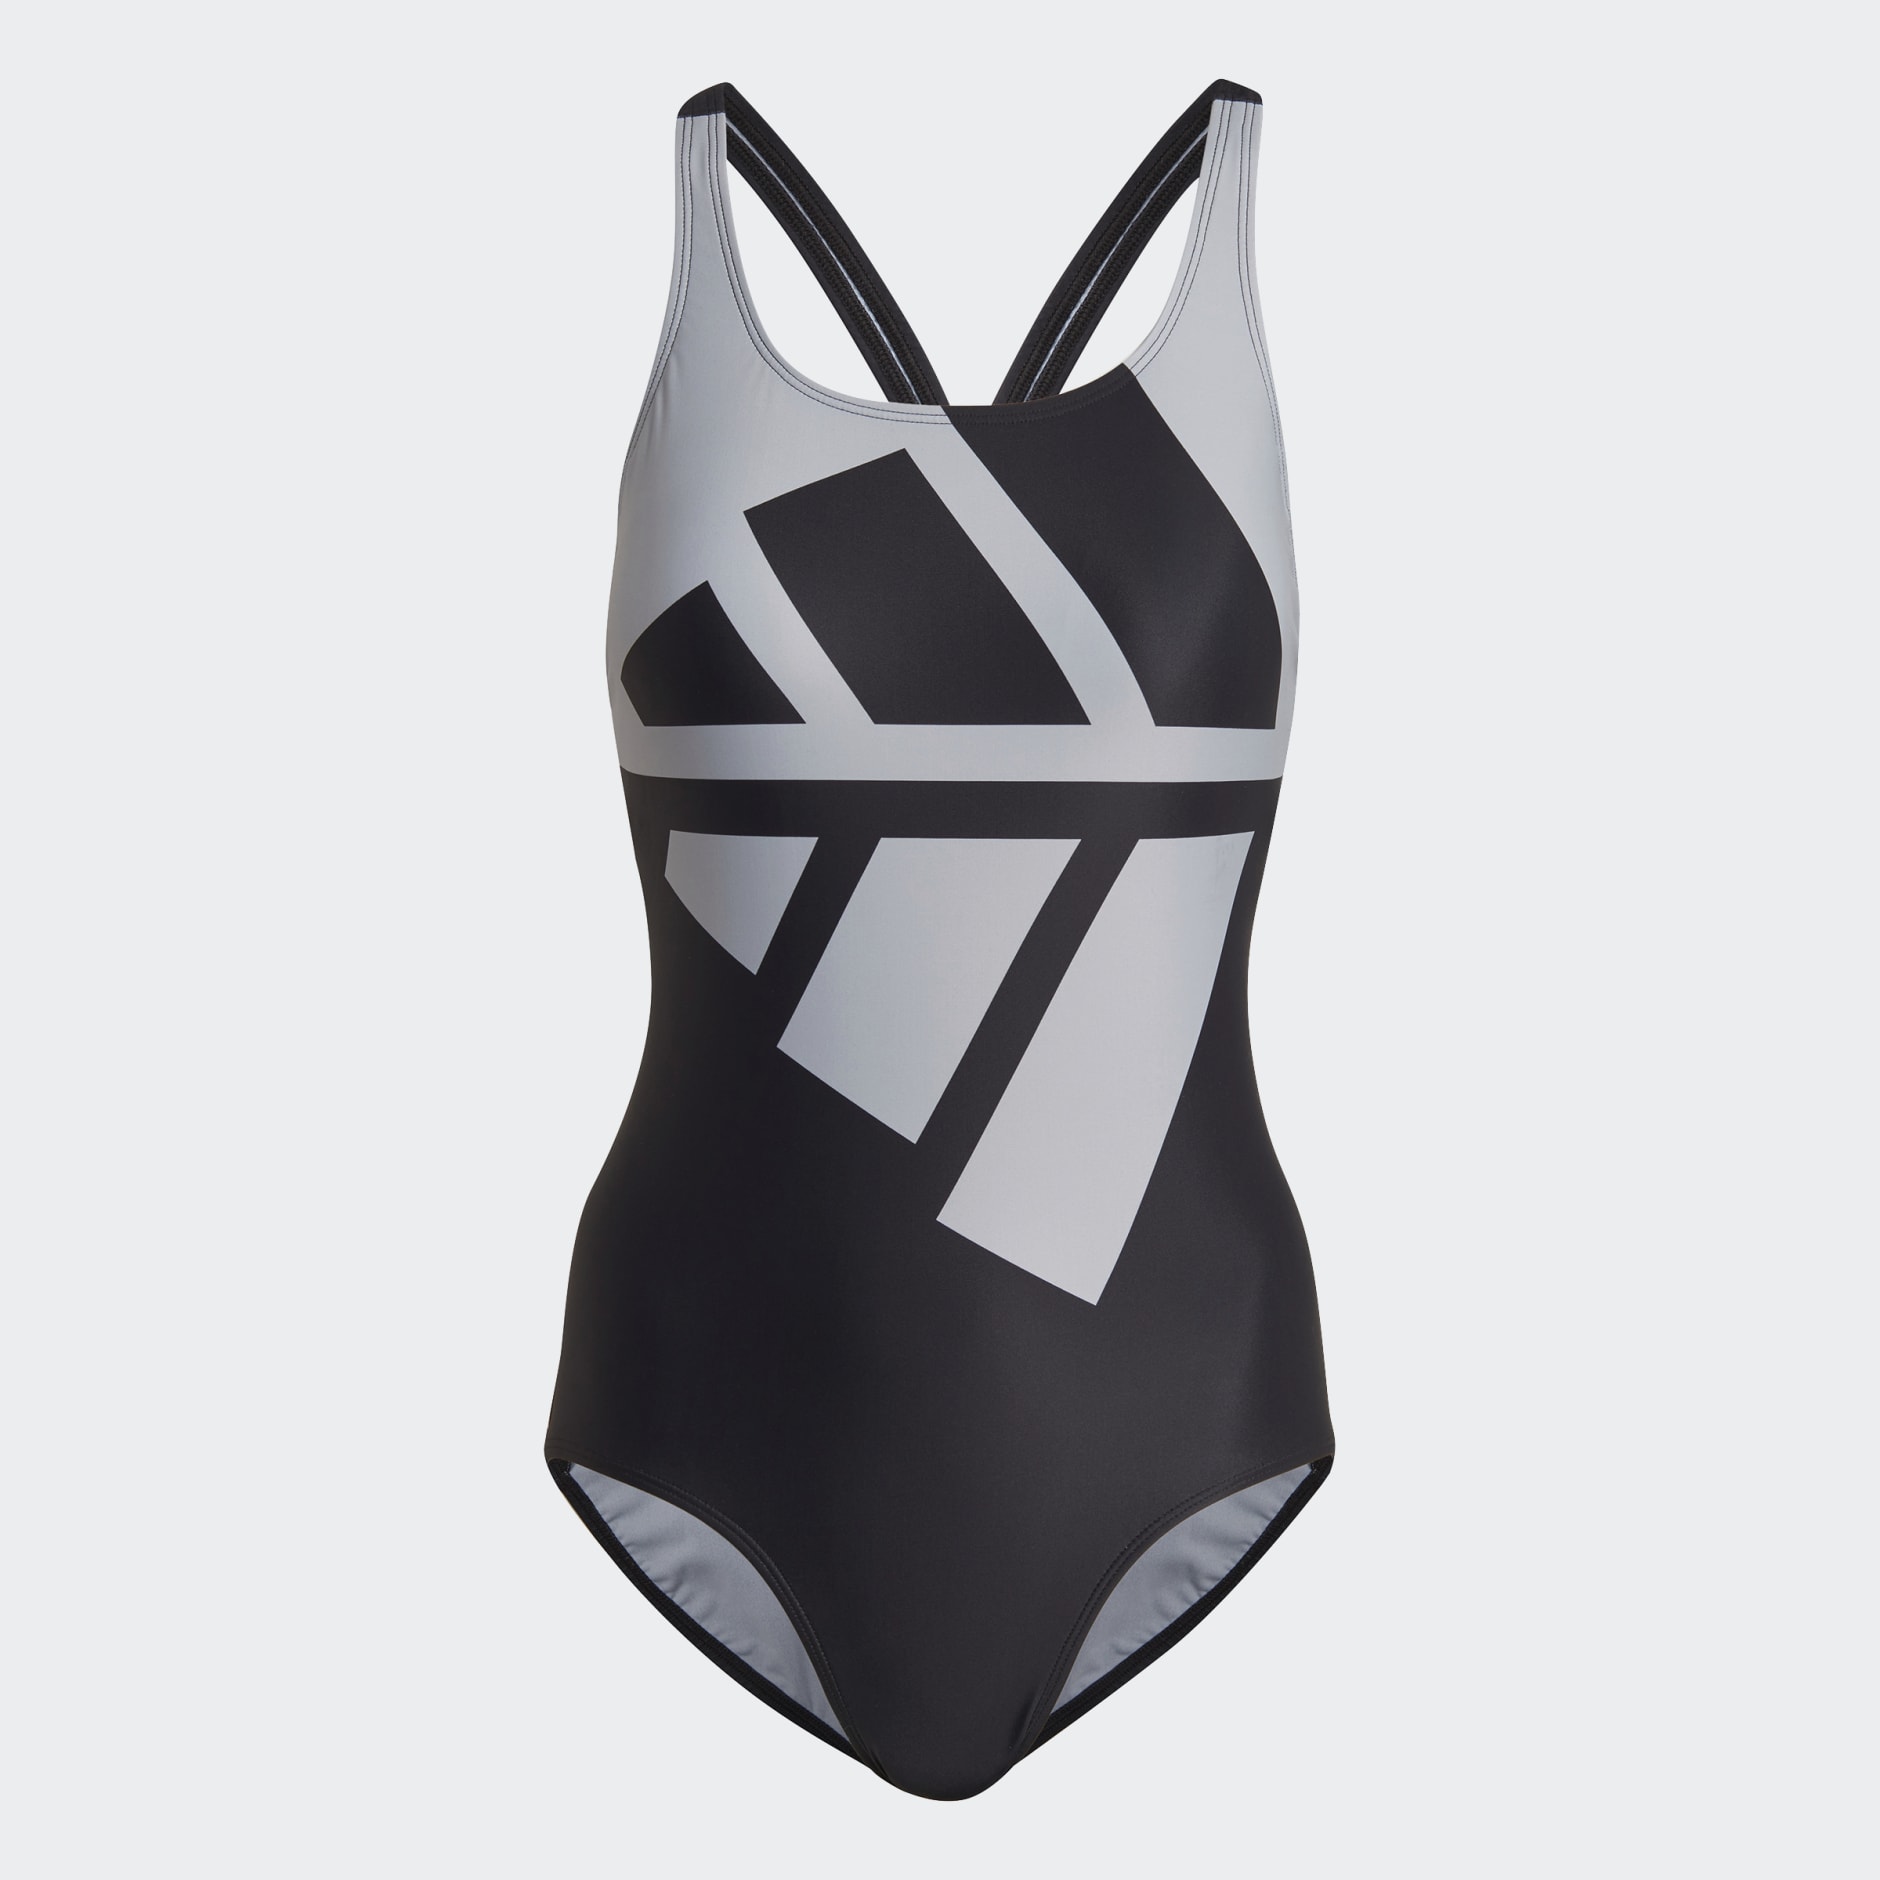 Clothing - Padded Logo Graphic Swimsuit - Black